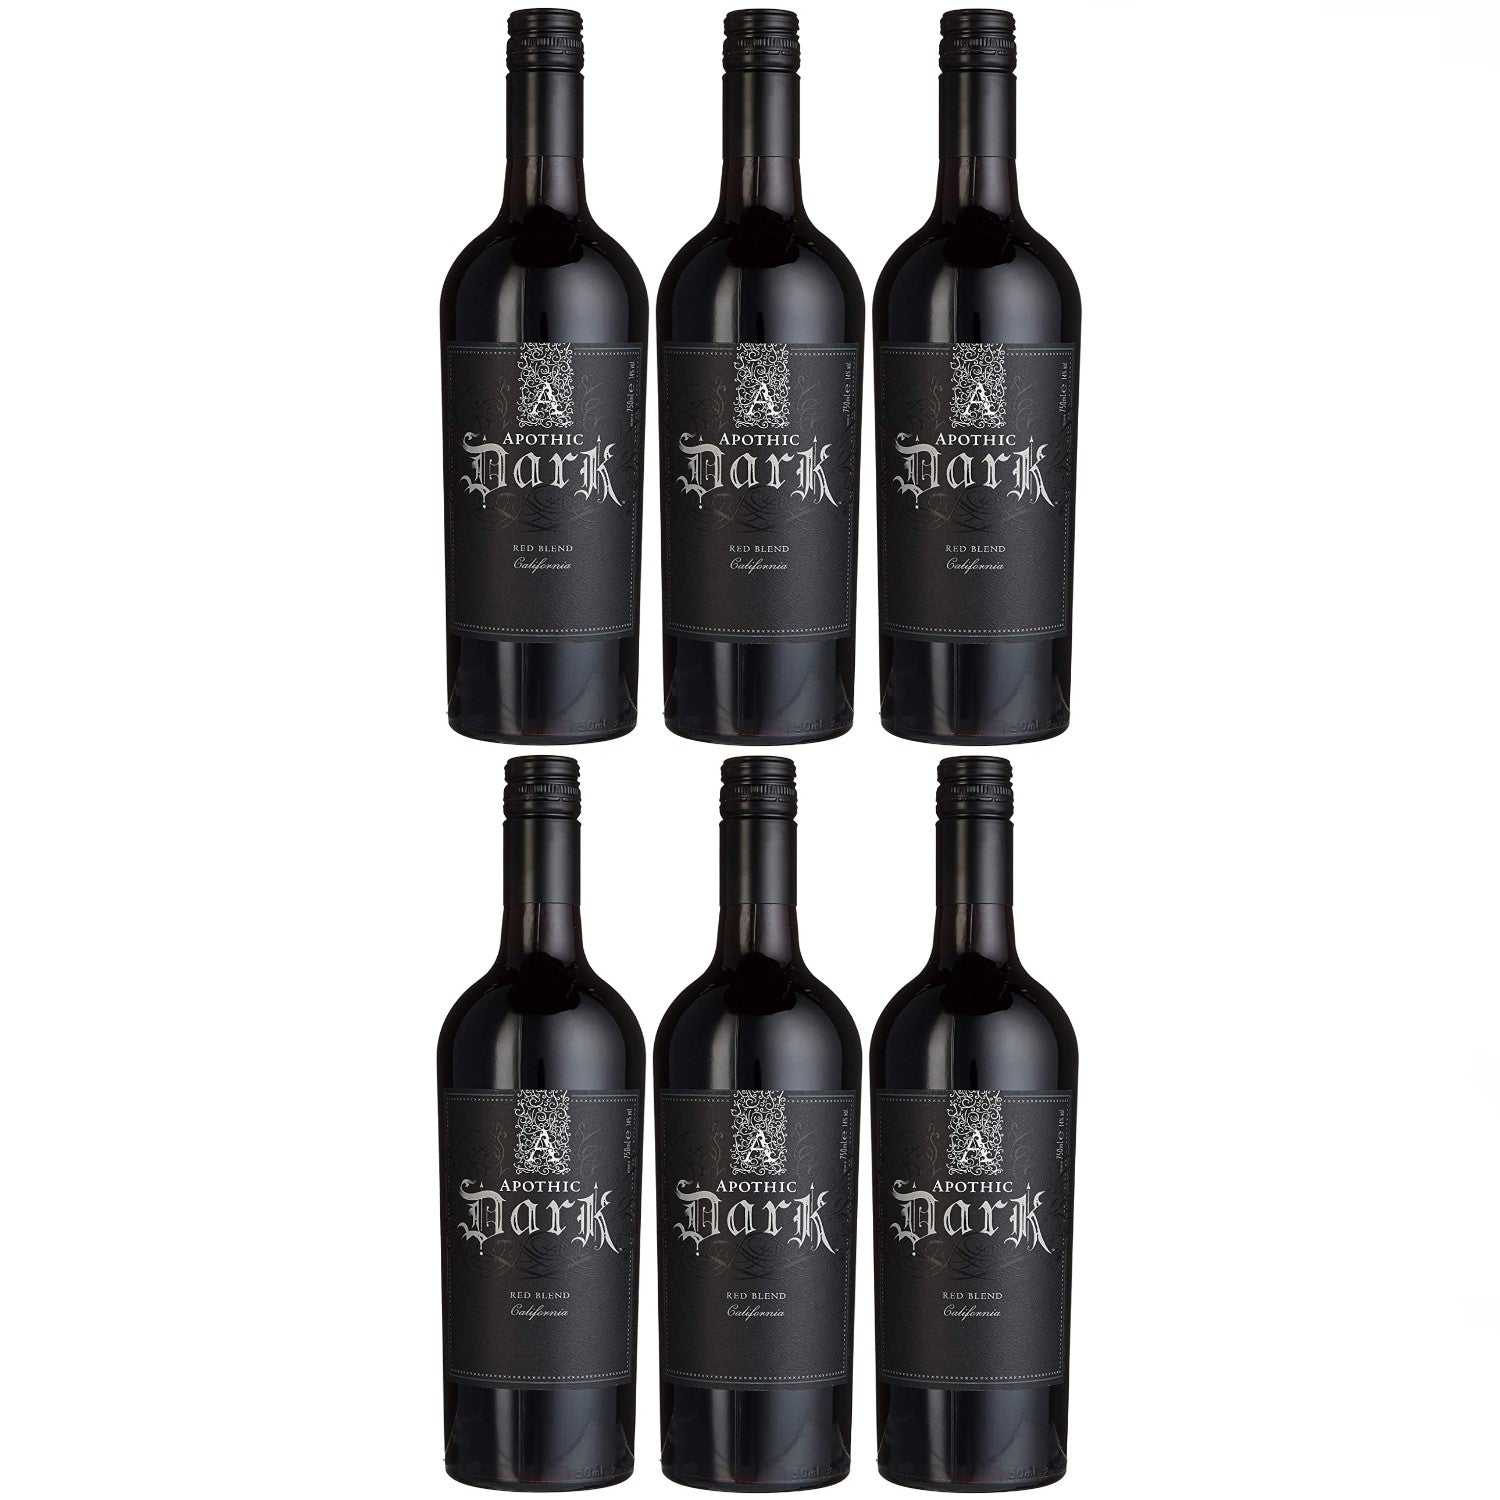 Apothic Dark Rotwein Cuvée Wein trocken Kalifornien (6 x 0.75l) – Versanel | Weinpakete